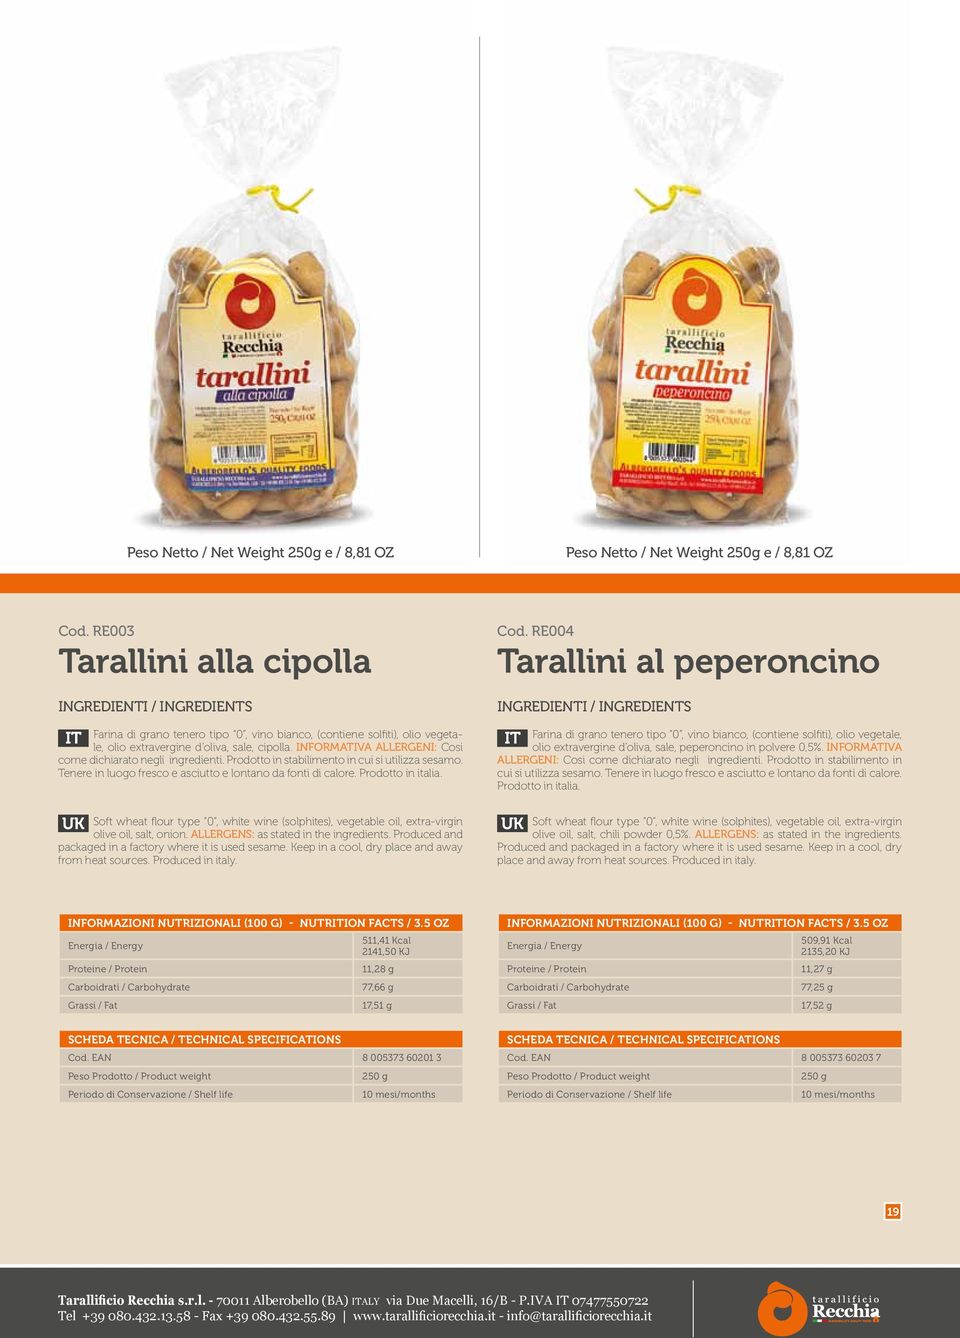 RE004 Tarallini al peperoncino olio extravergine d oliva, sale, peperoncino in polvere 0,5%. INFORMATIVA ALLERGENI: Cosi come dichiarato negli ingredienti.